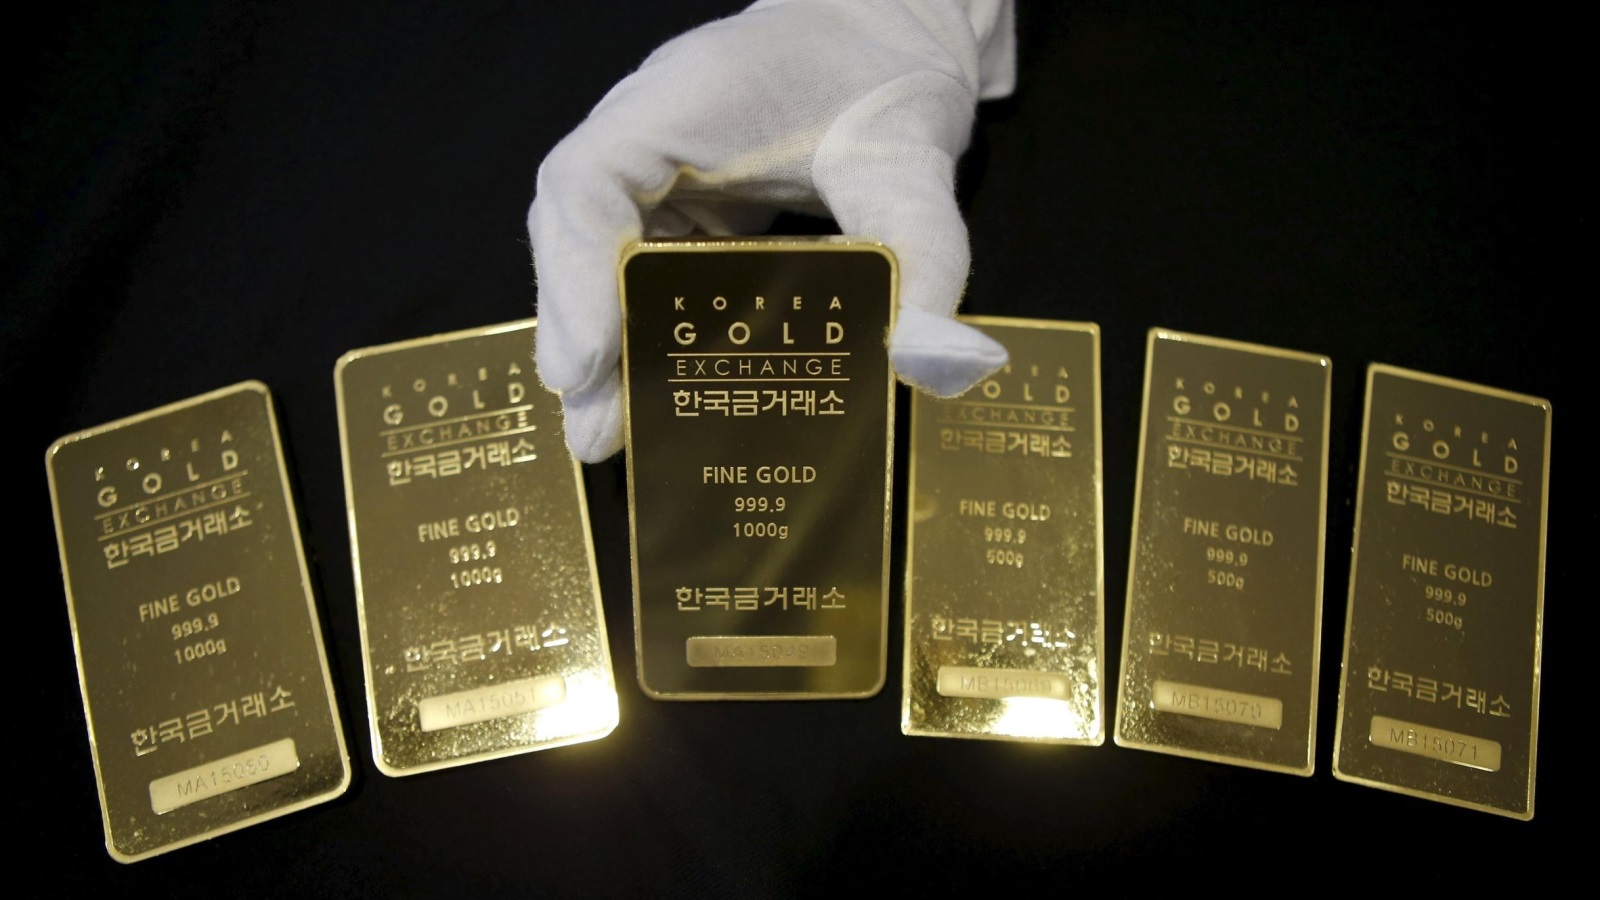 ‪الذهب كسب 12 دولارا على خلفية تصاعد التوترات بسوريا‬ الذهب كسب 12 دولارا على خلفية تصاعد التوترات بسوريا (رويترز)